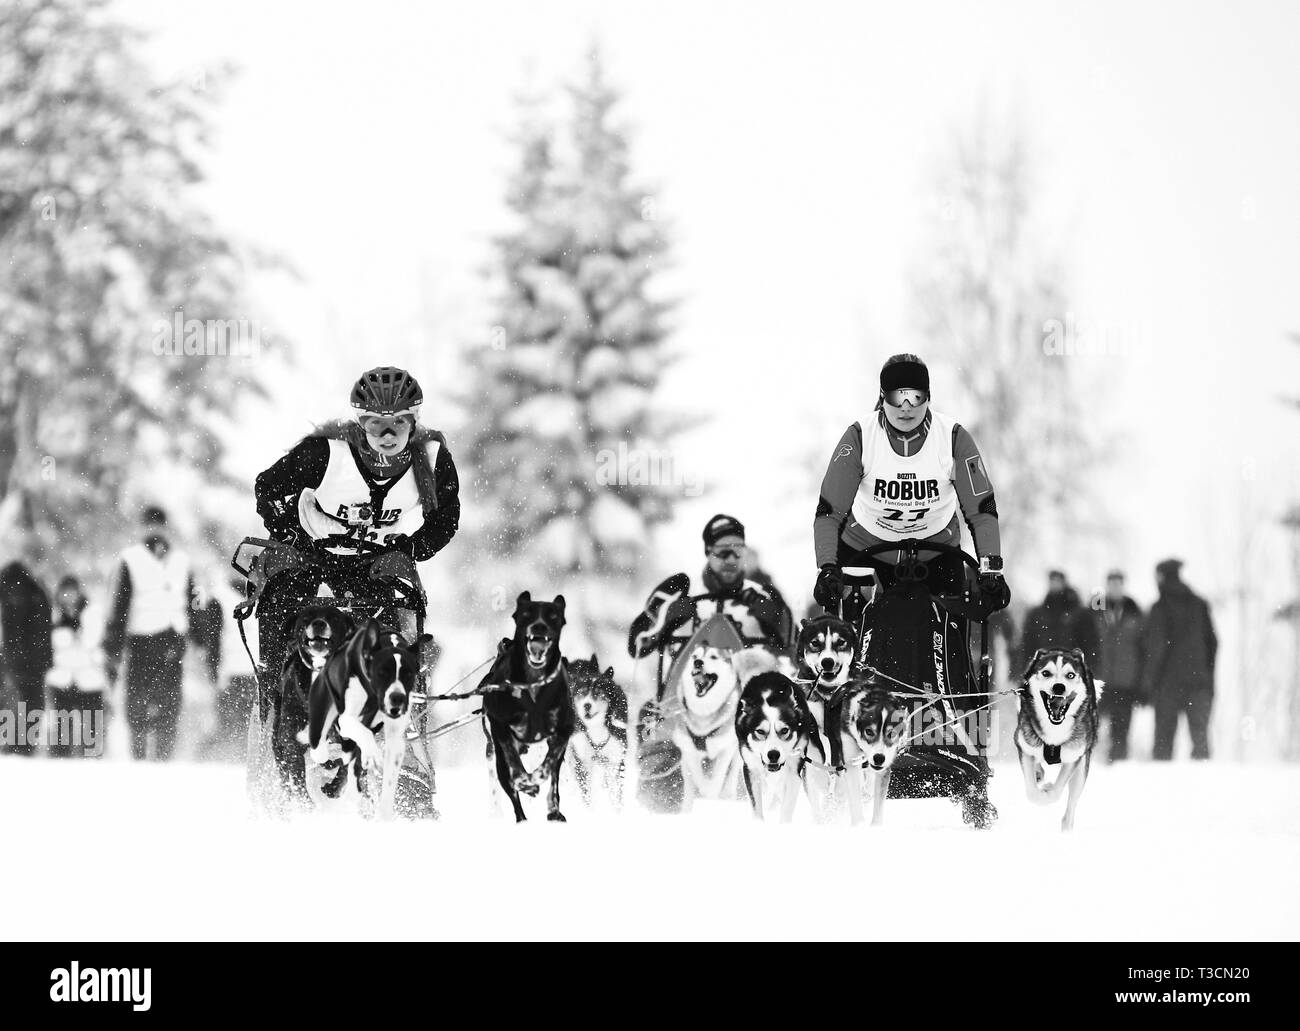 ÅNNABODA ÖREBRO 20150130 veckan SM, j'vintersporter, j'Ånnaboda Örebro, 2015. Bilden : Draghund. Bild Jeppe Gustafsson Banque D'Images